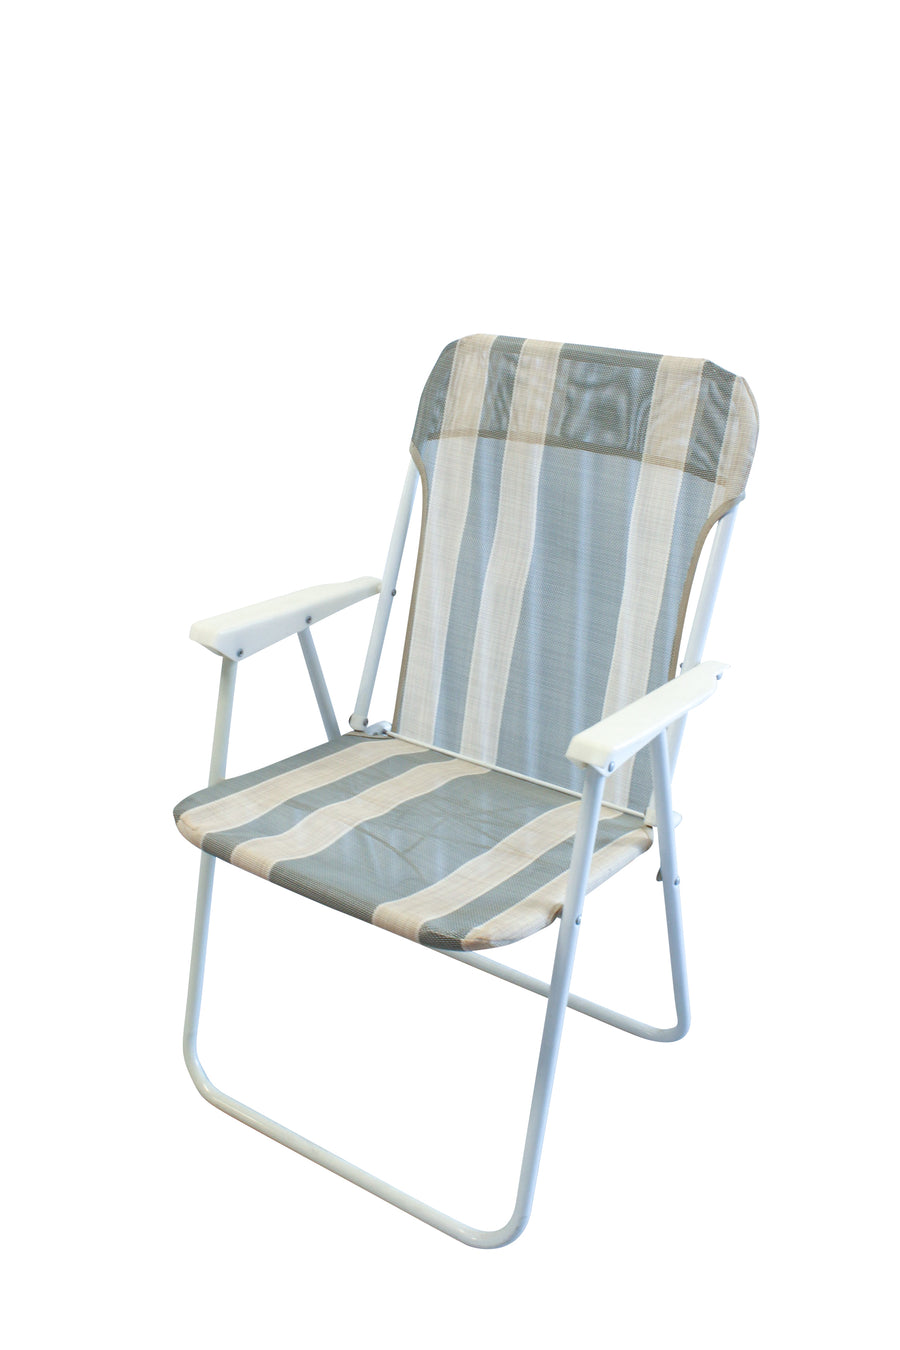 Striped Folding Lawn Chair